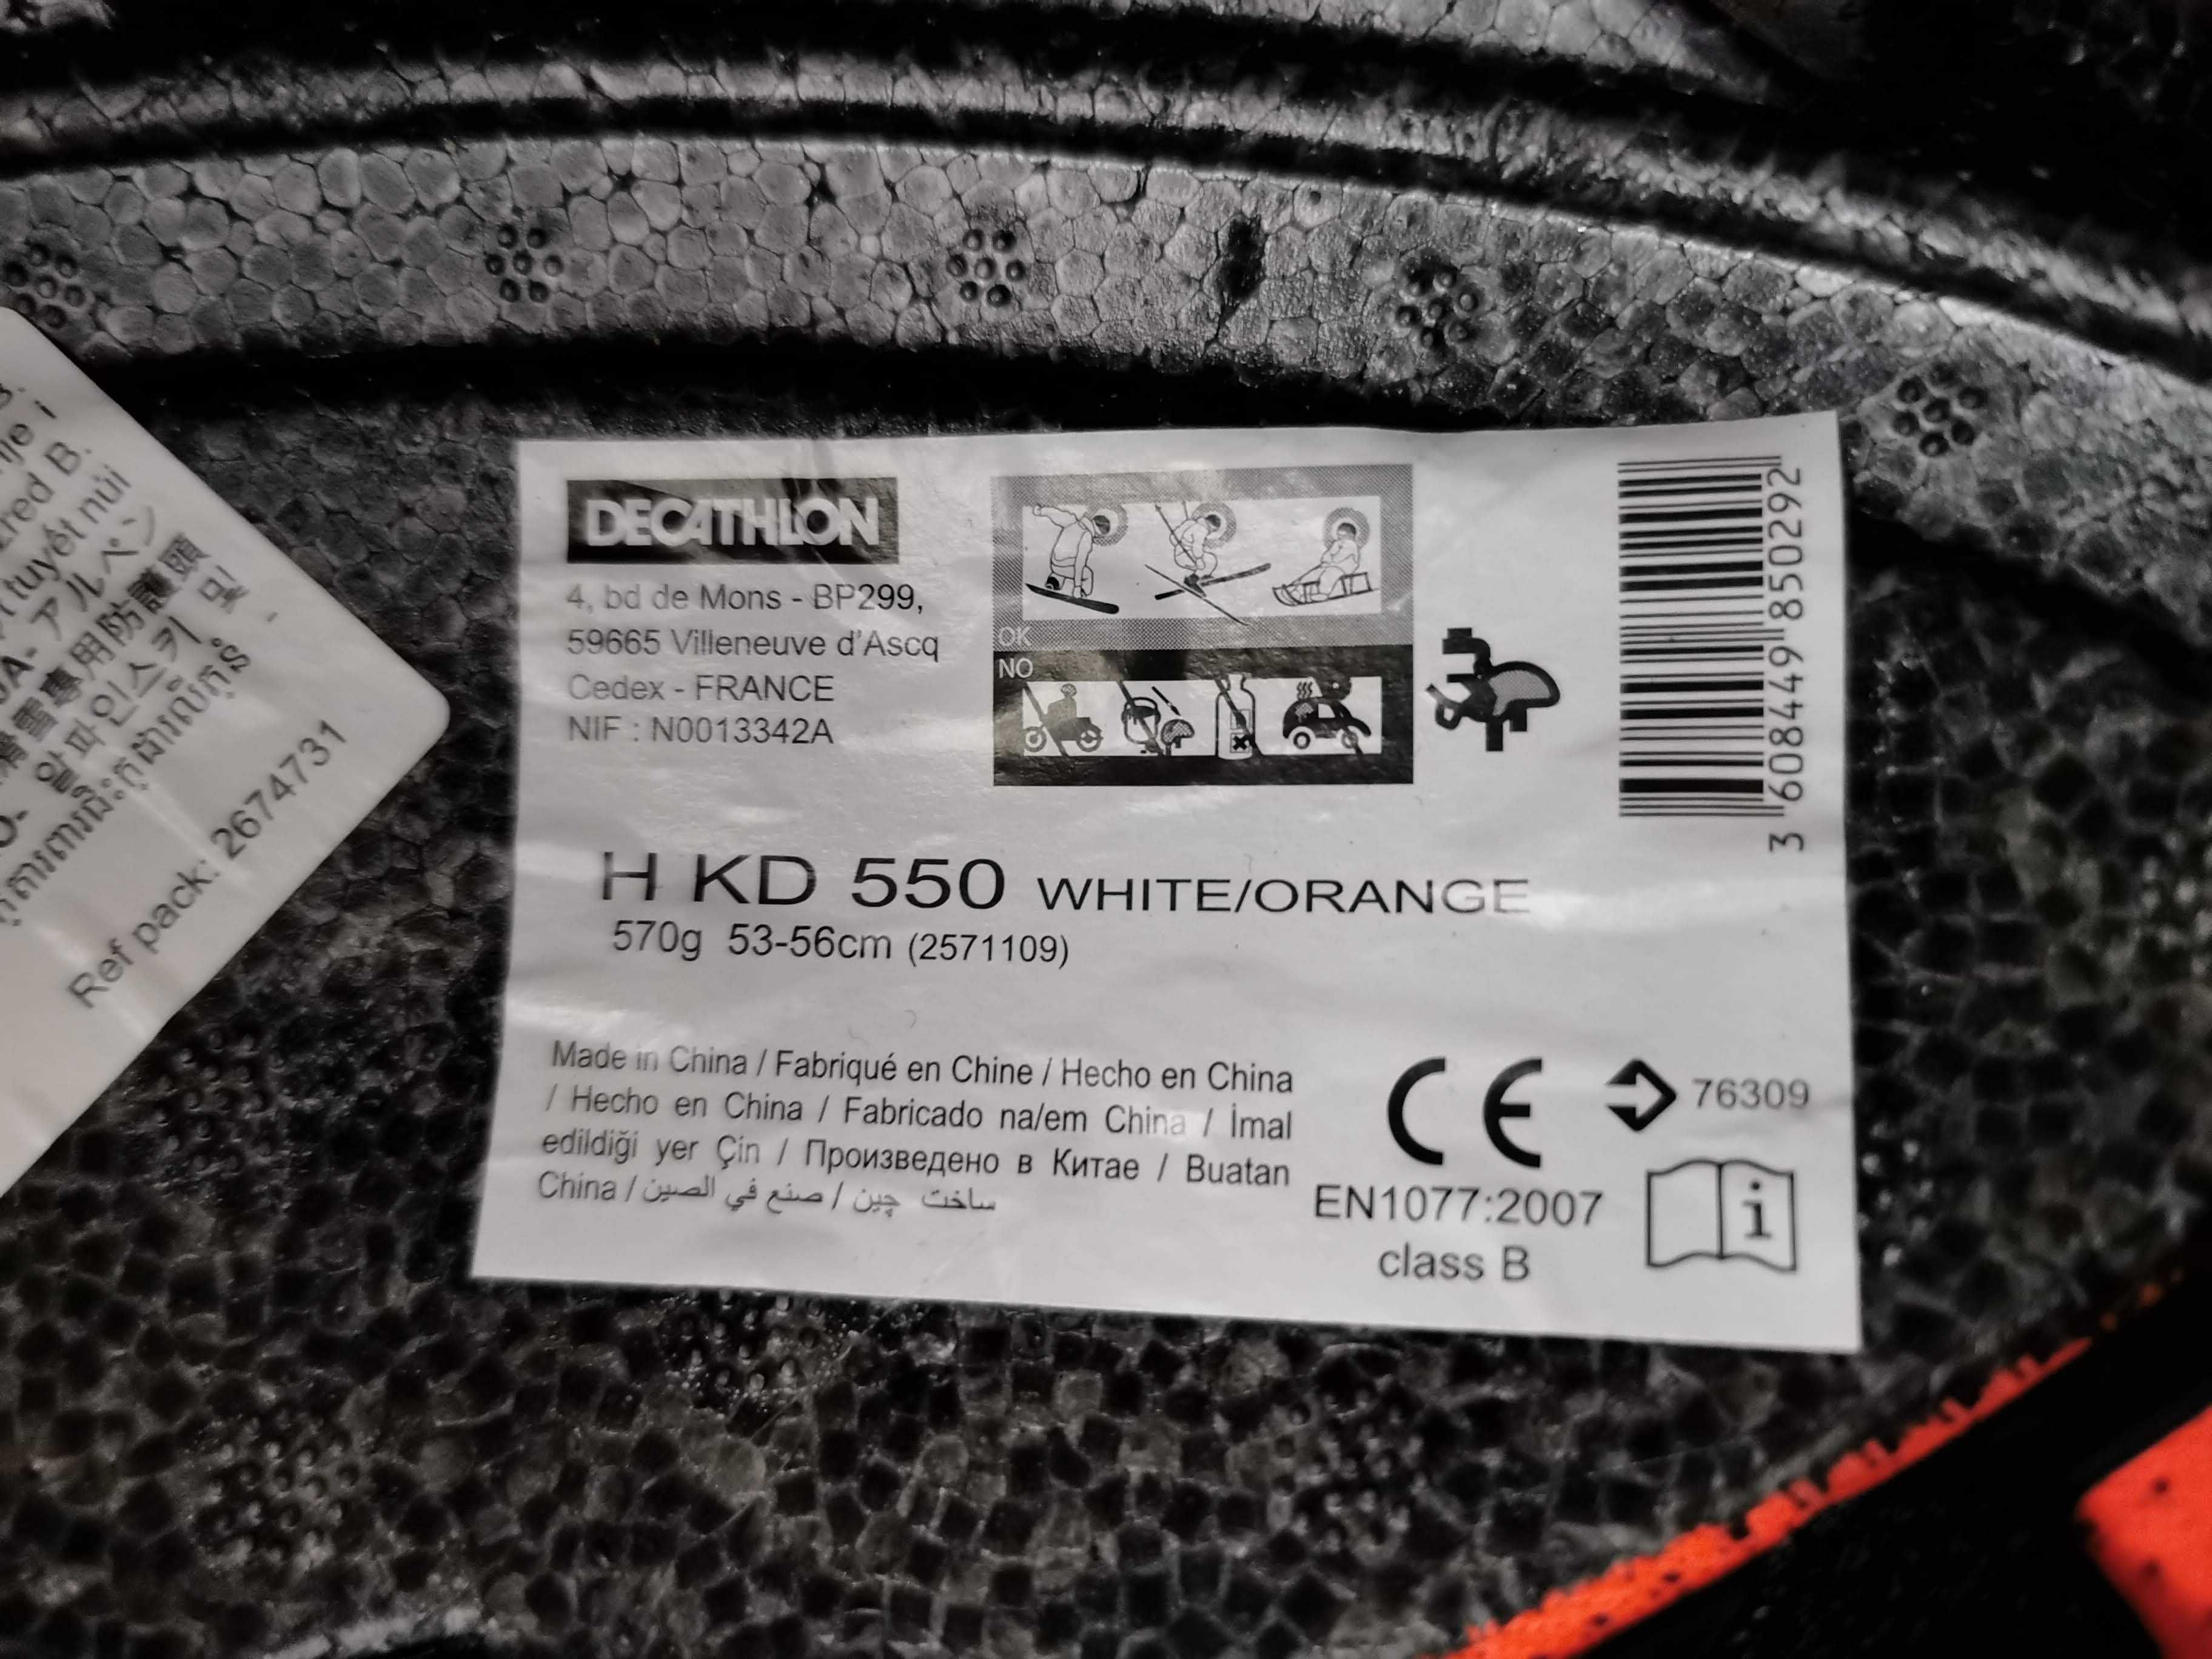 Kask narciarski Wedze HKD 550, roz. 53-56 cm, kolor biało/pomaranczowy